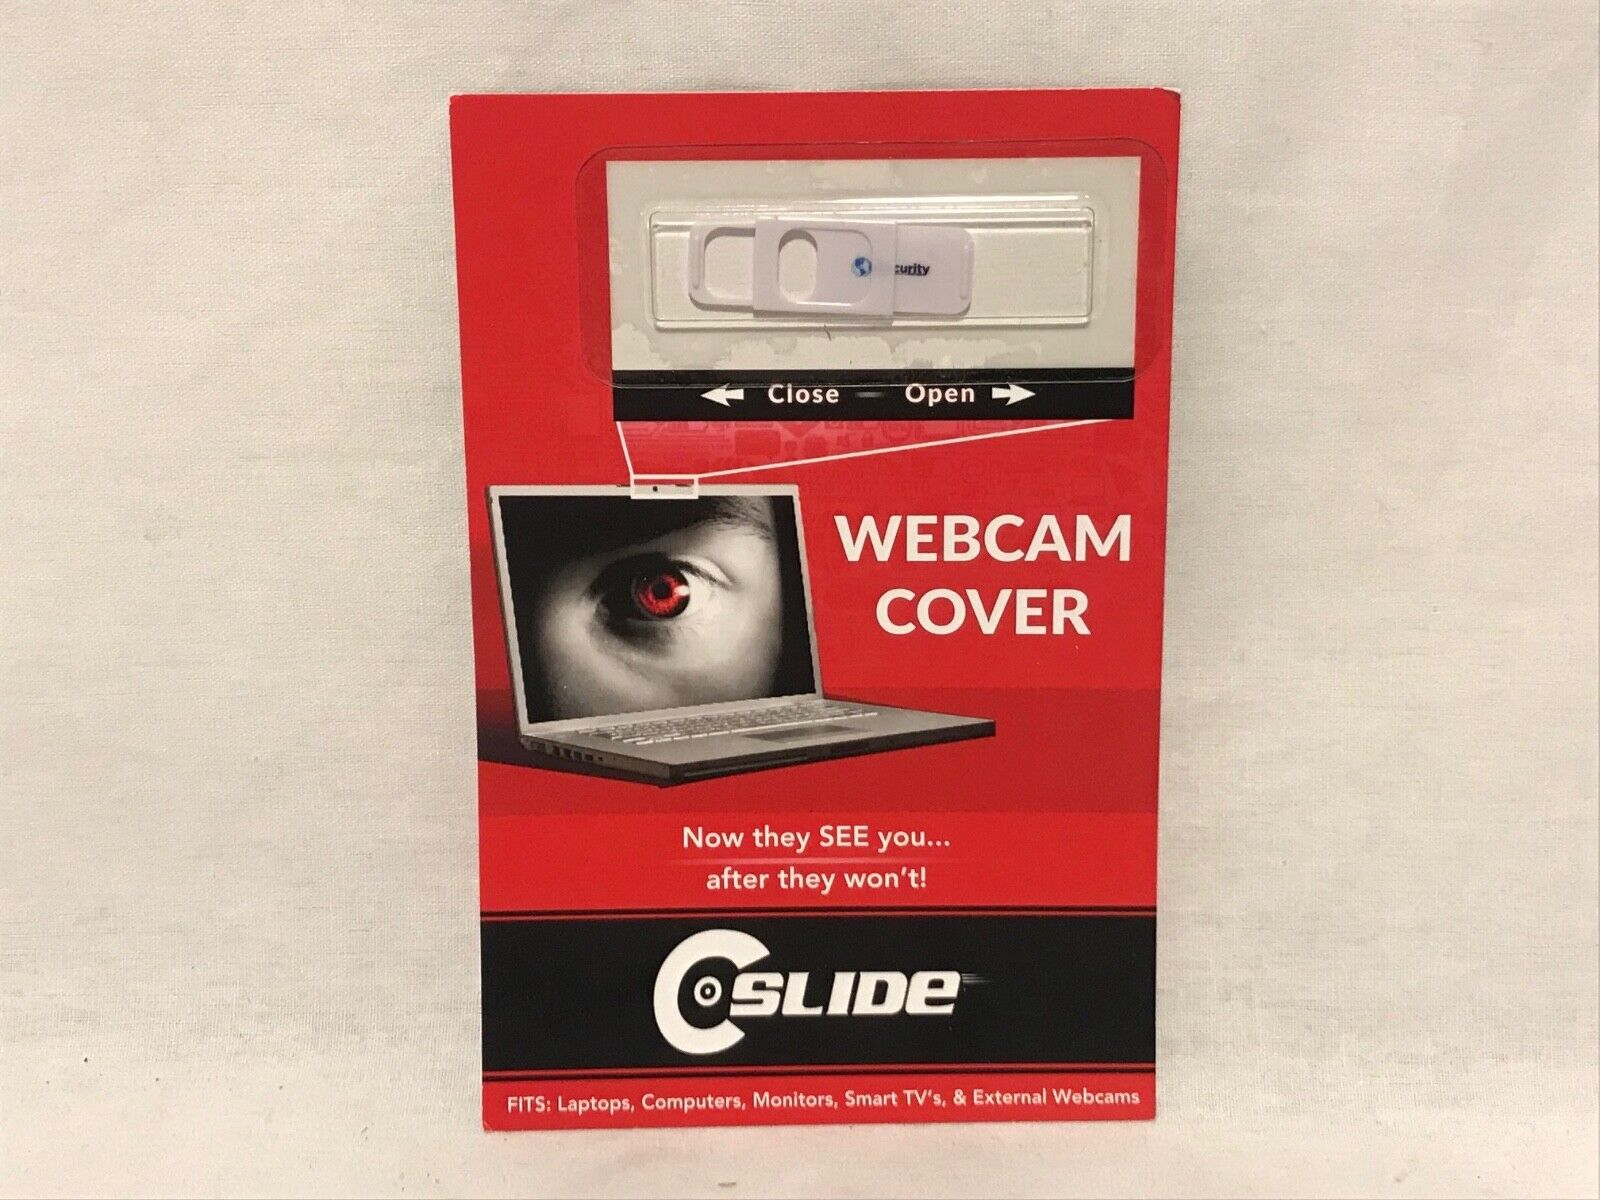 Lot of 20 | The Original Sliding Webcam Cover | C-Slide White Stalker Blocker